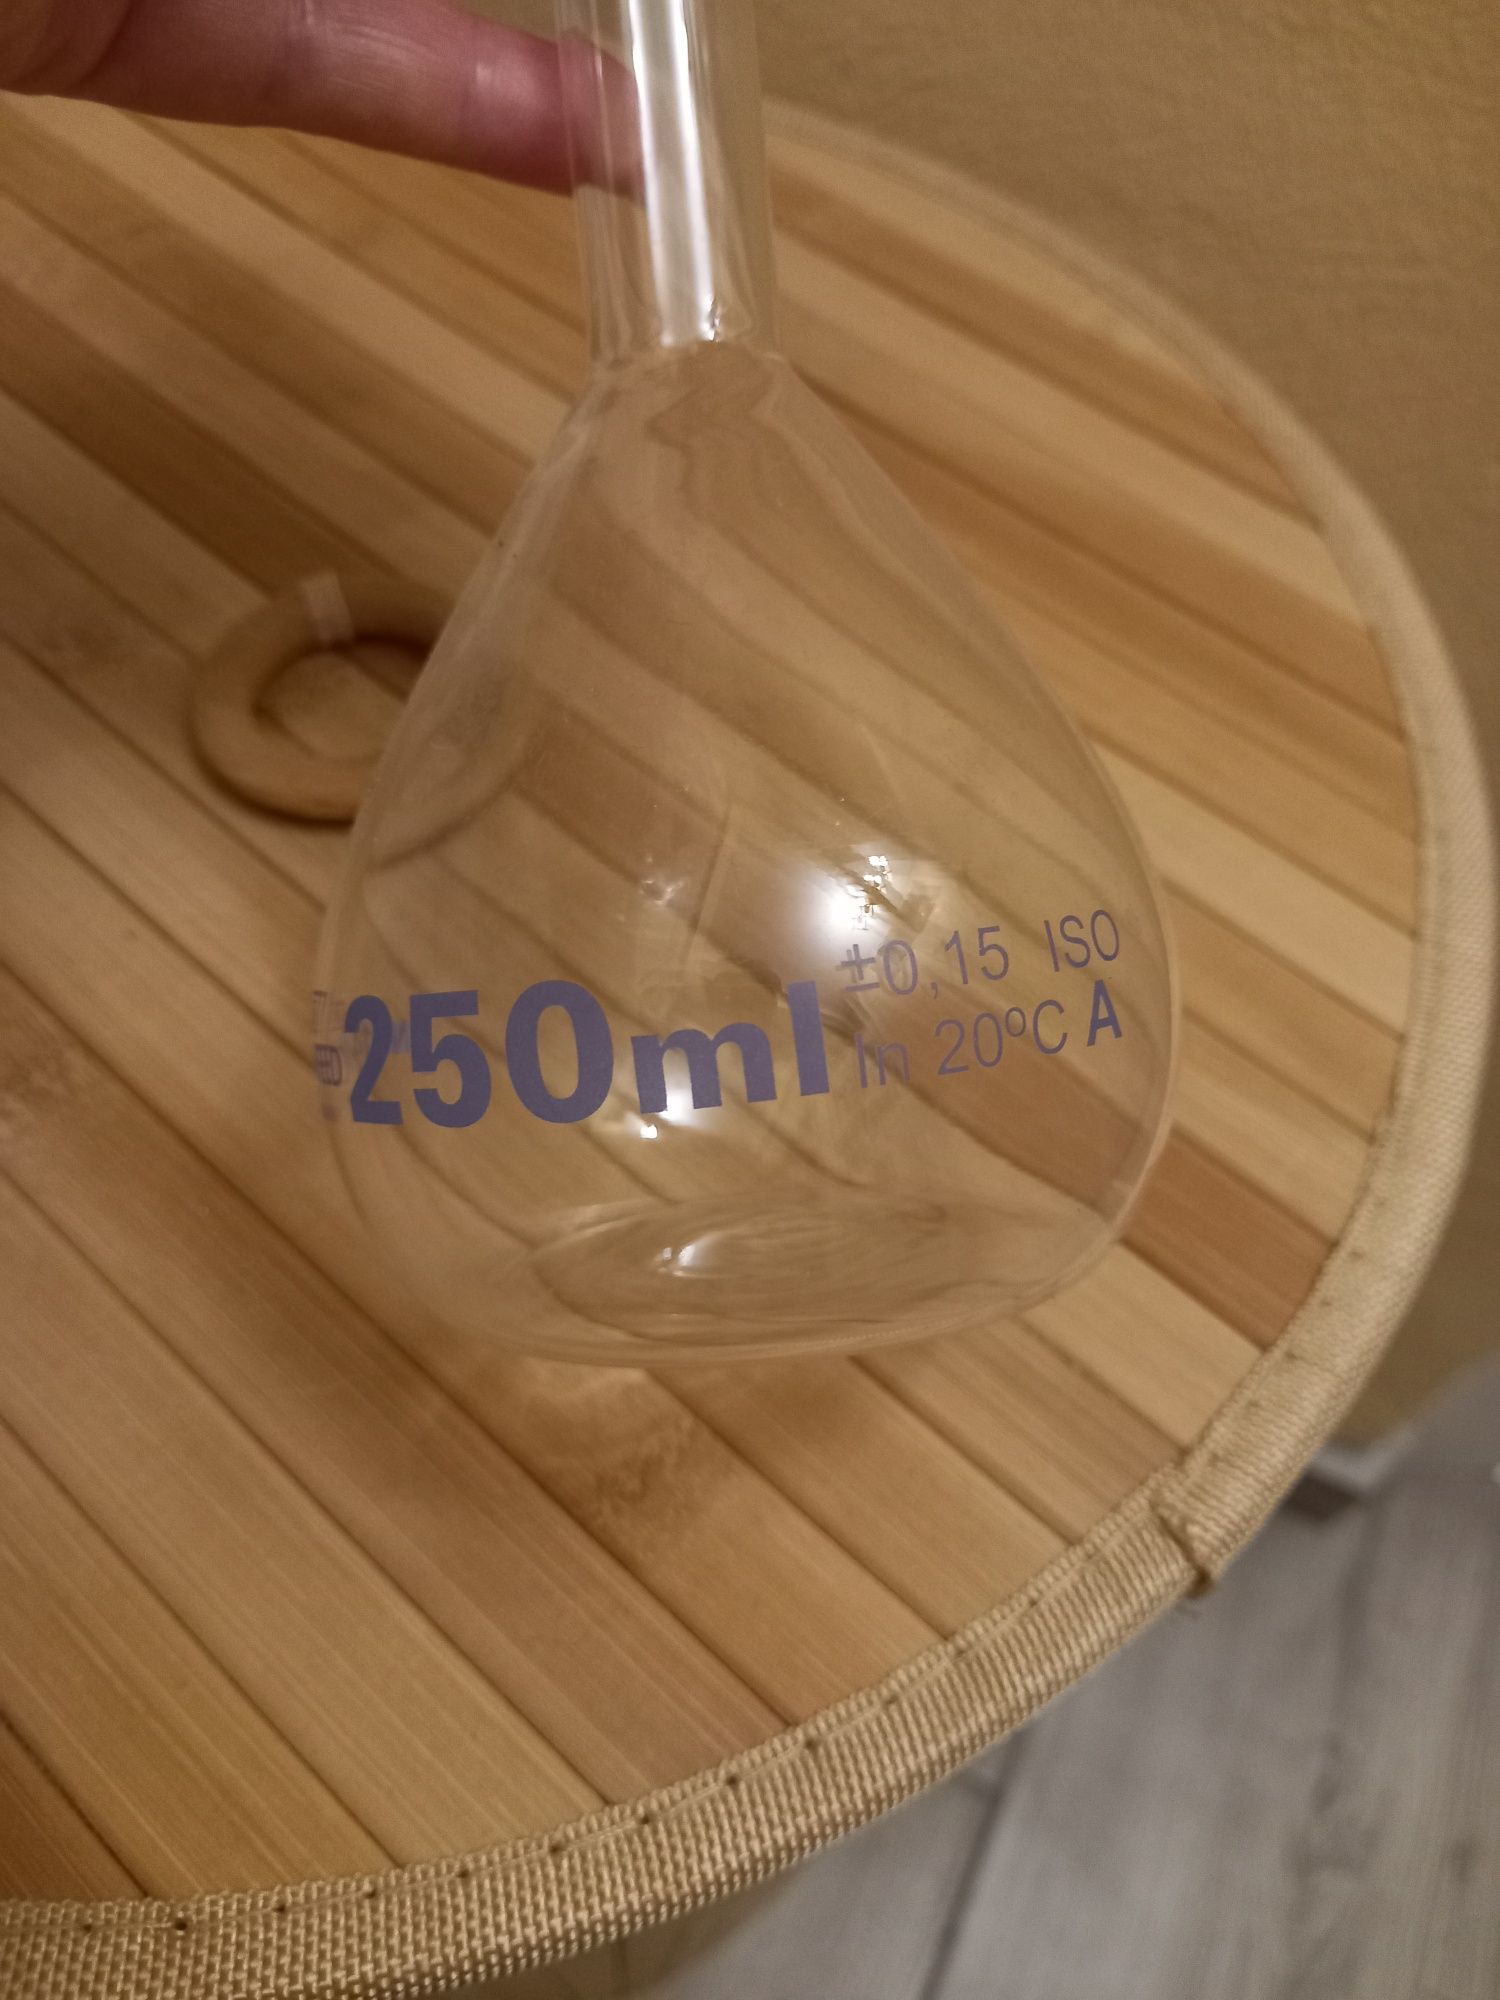 Sticlă laborator :Balon cotat cu slif Marienfeld